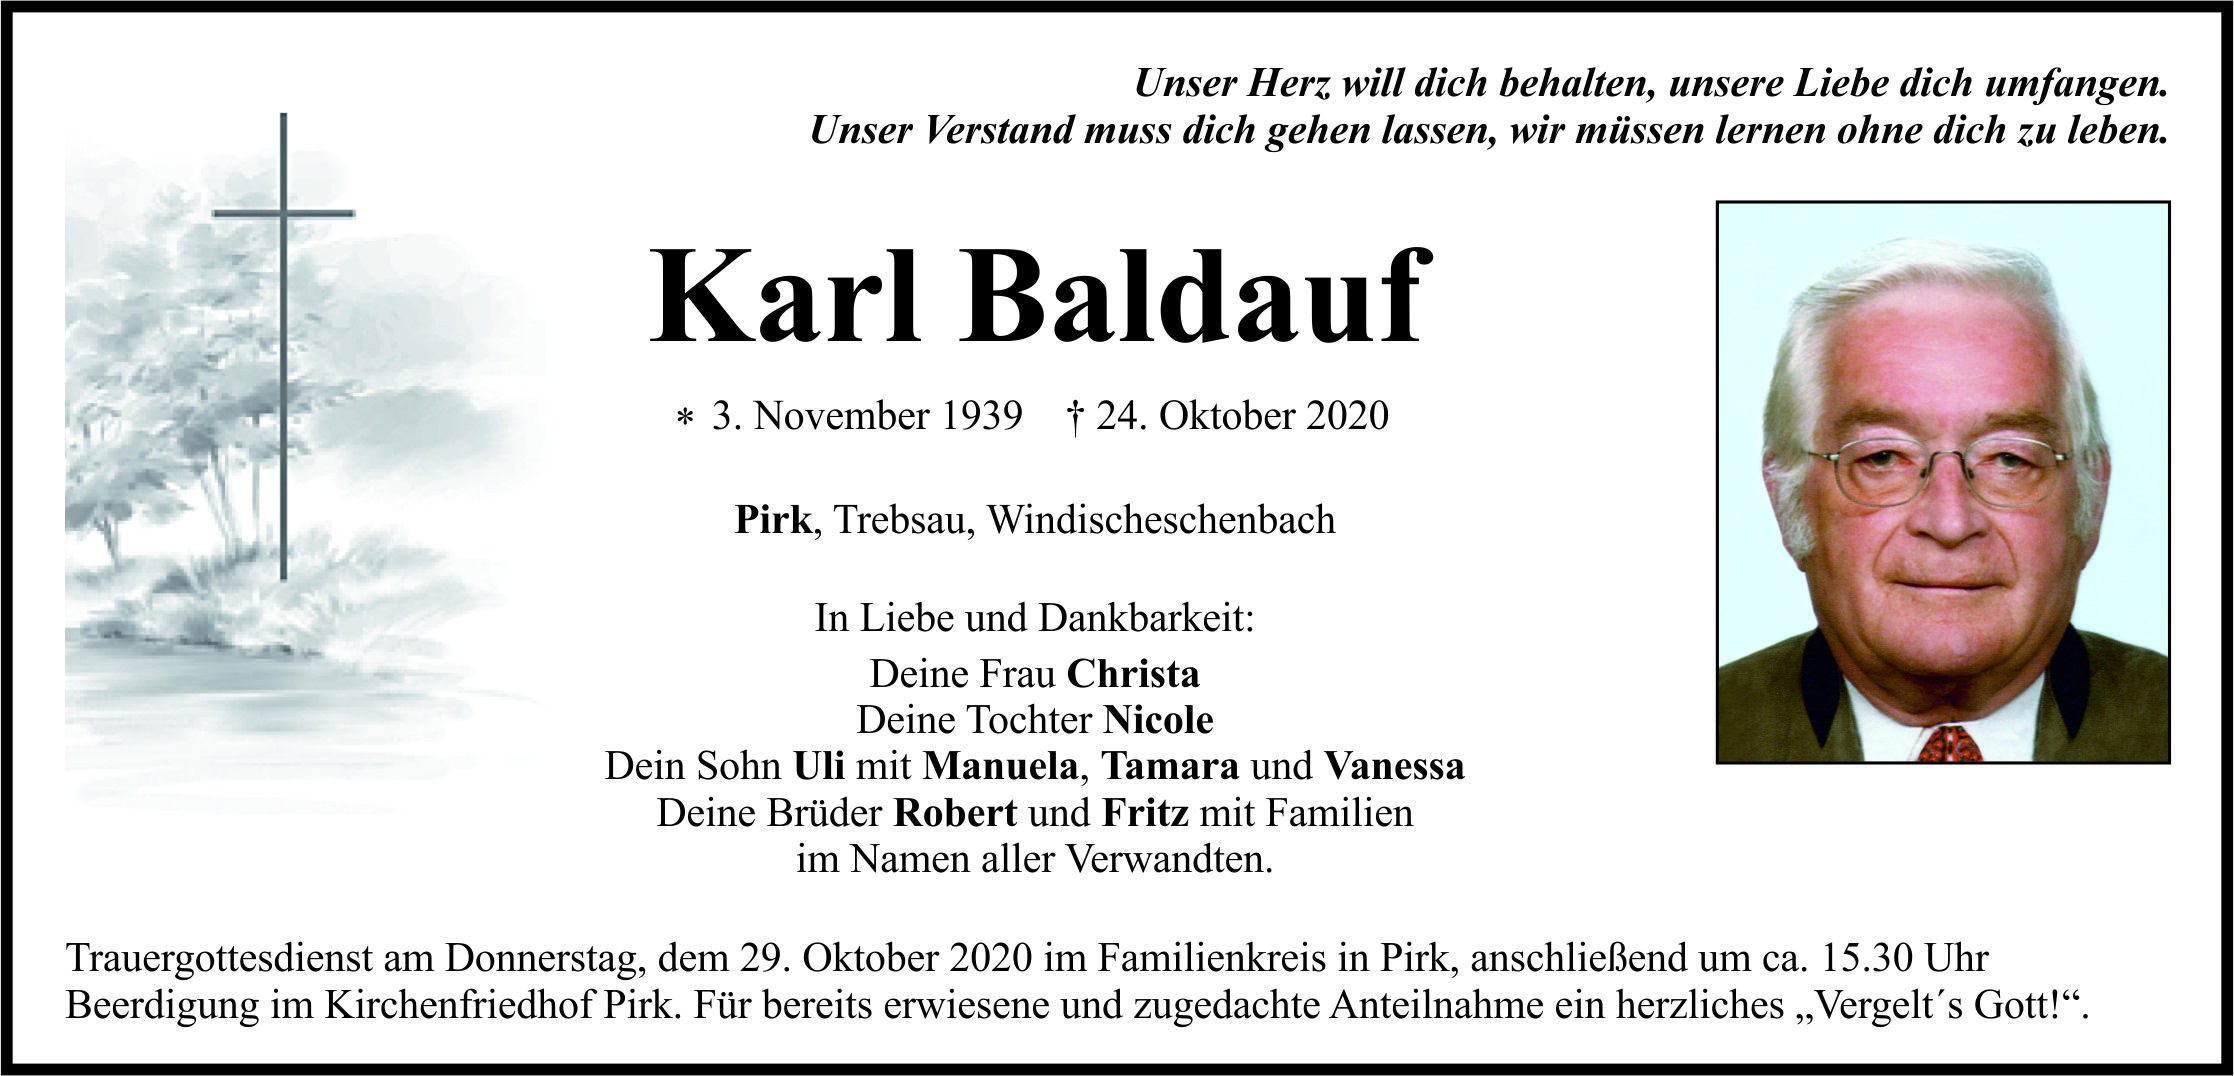 Traueranzeige Karl Baldauf, Pirk